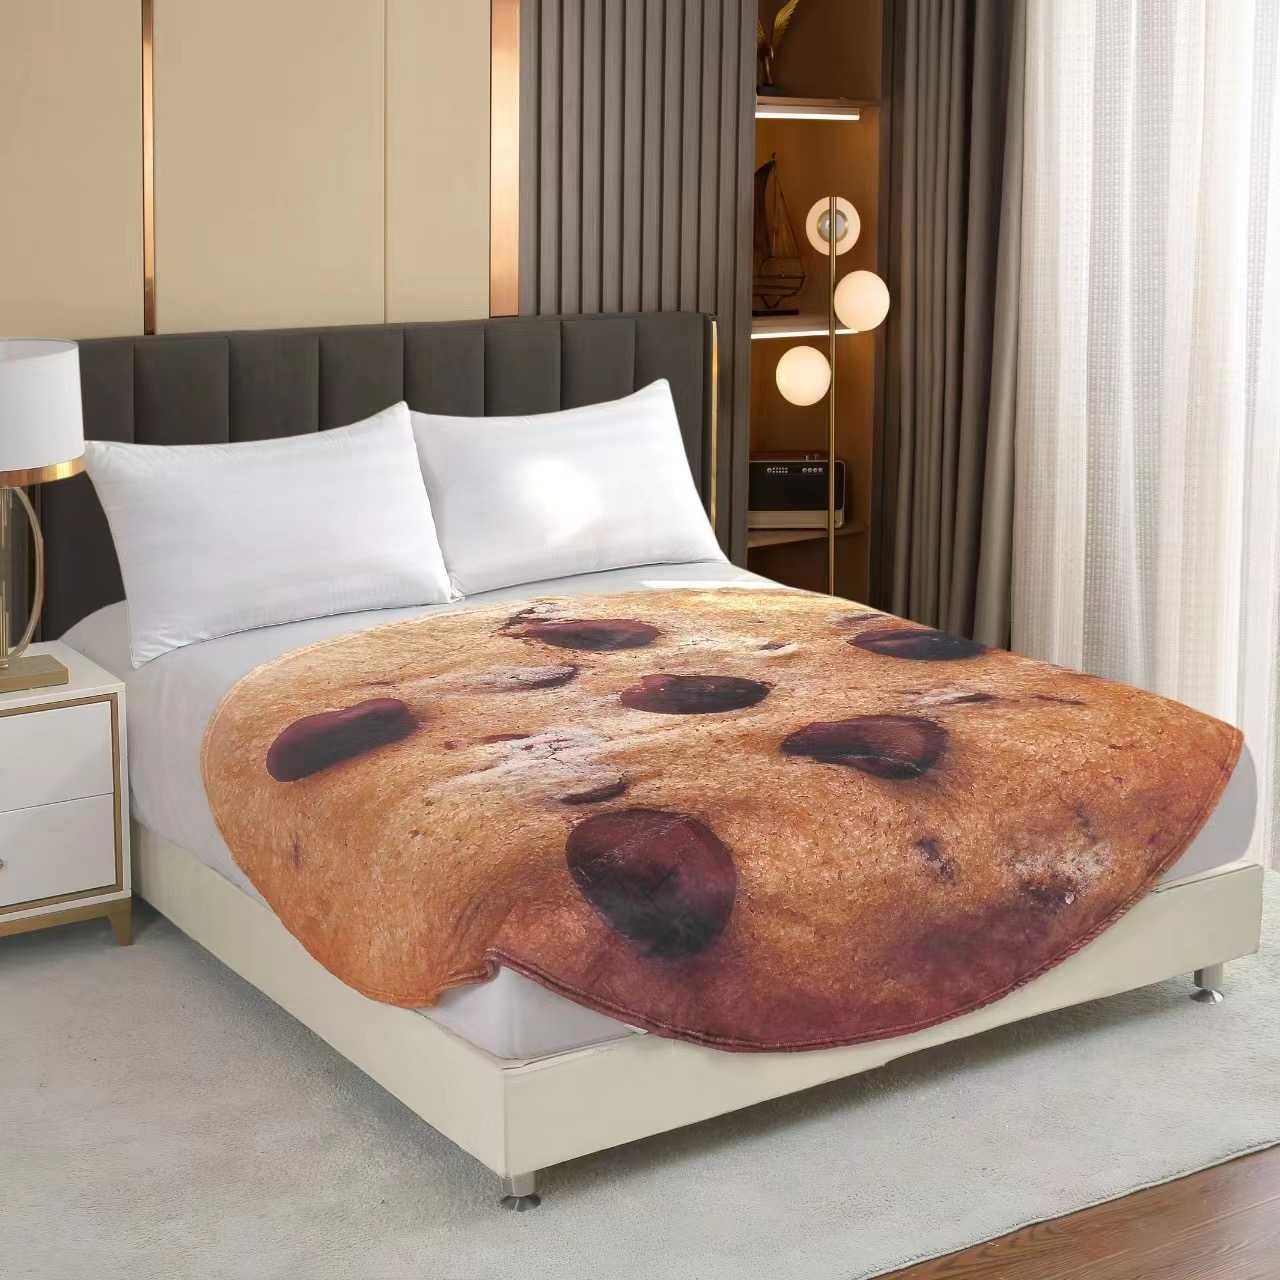 Patura pat, Eurozep, model biscuit, dimensiune 180cm x 180 cm, pufoasa